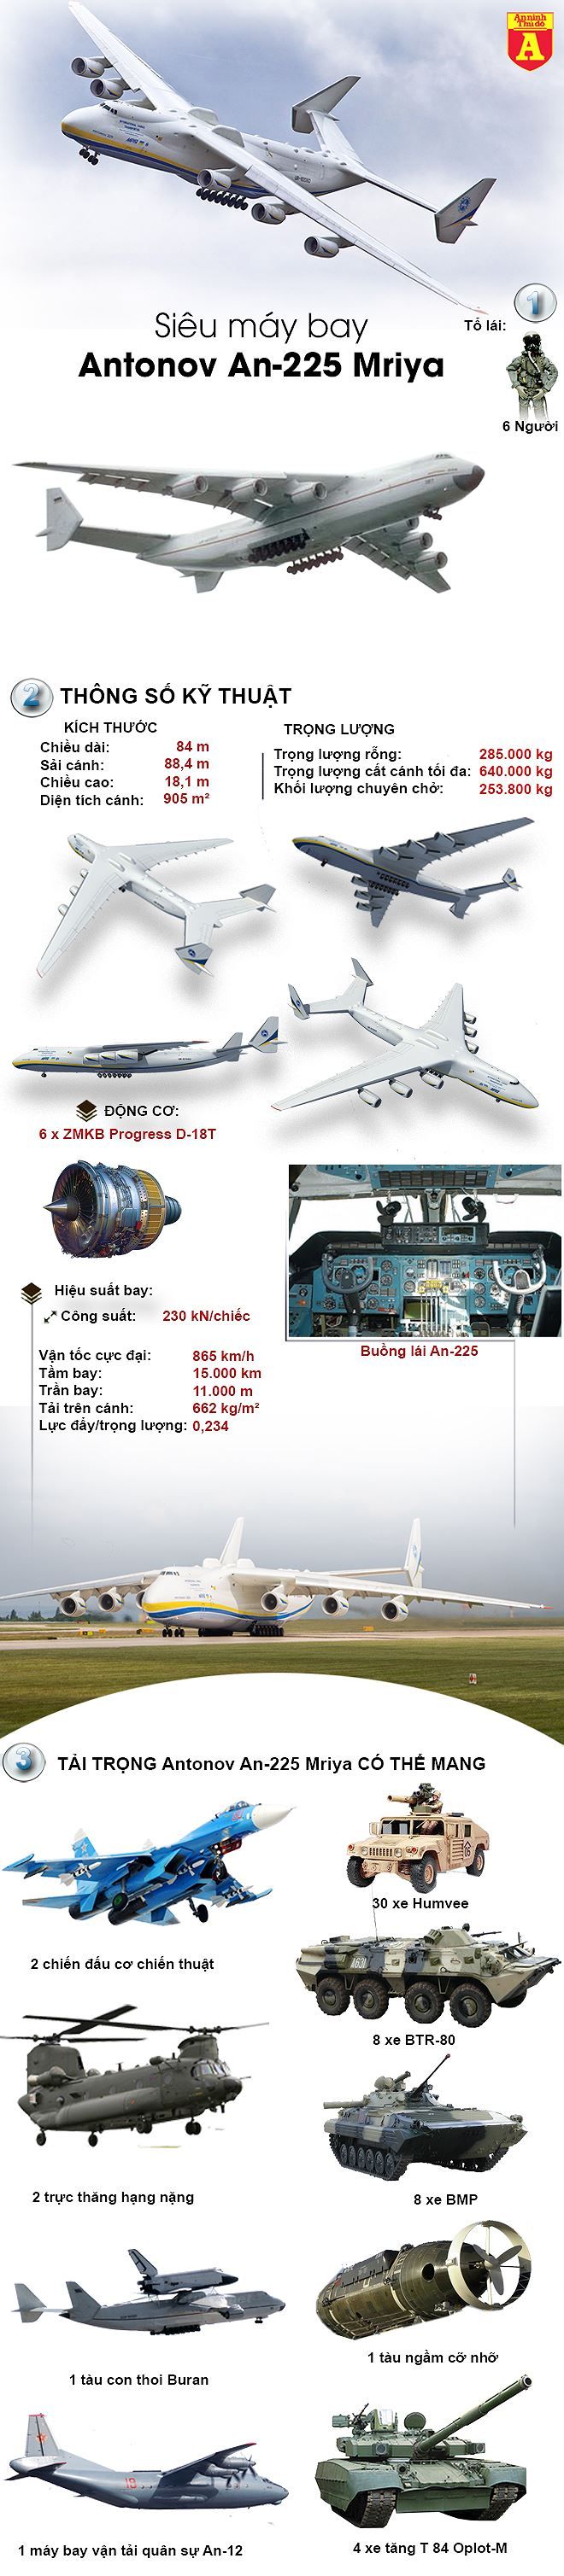 [Infographic] Khám phá máy bay vận tải khổng lồ An-225 'độc nh...